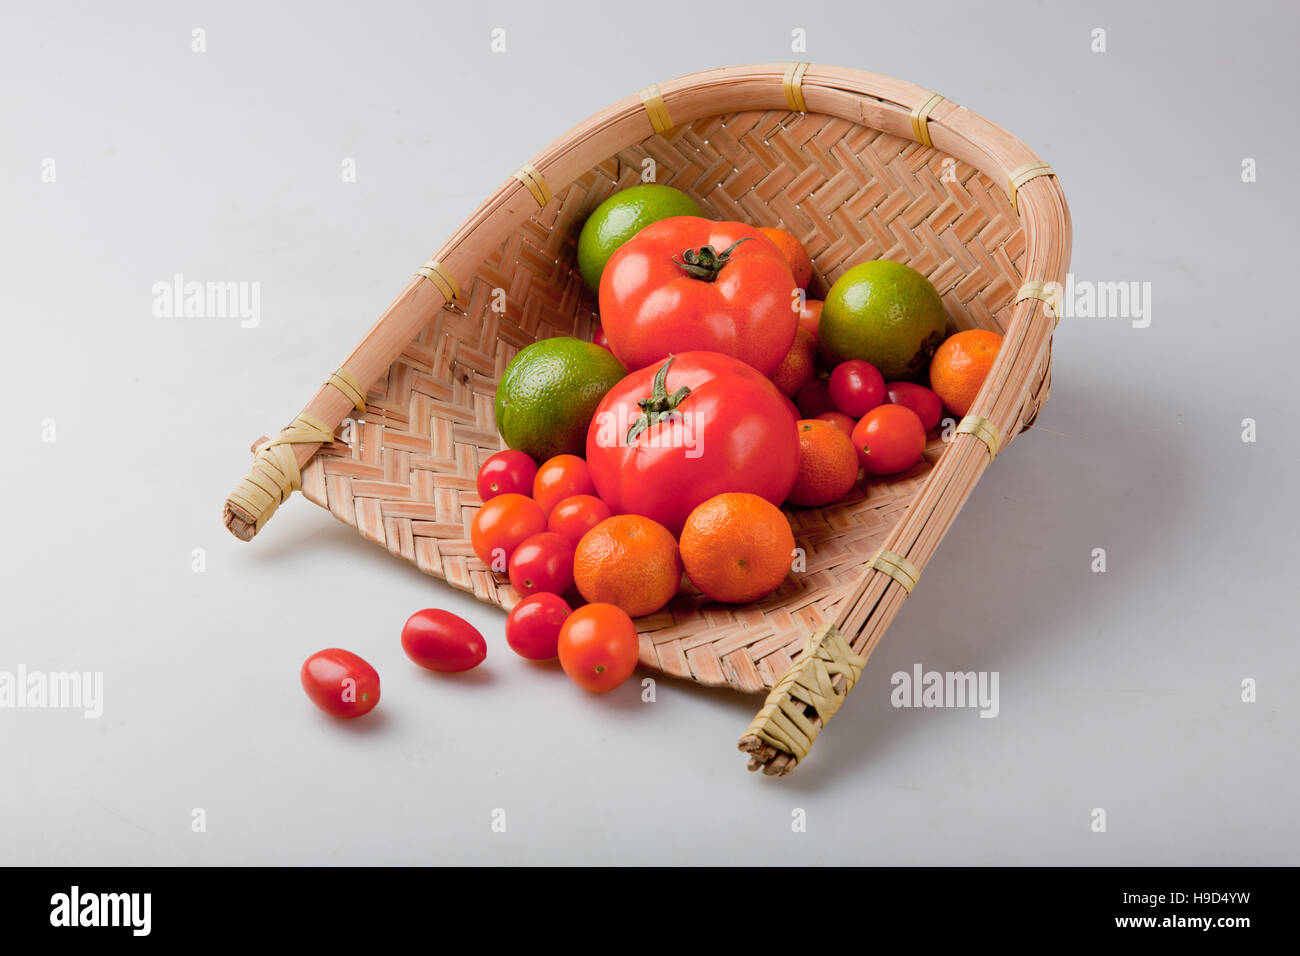 Assortiment de fruits exotiques dans le panier, isolated on white Banque D'Images